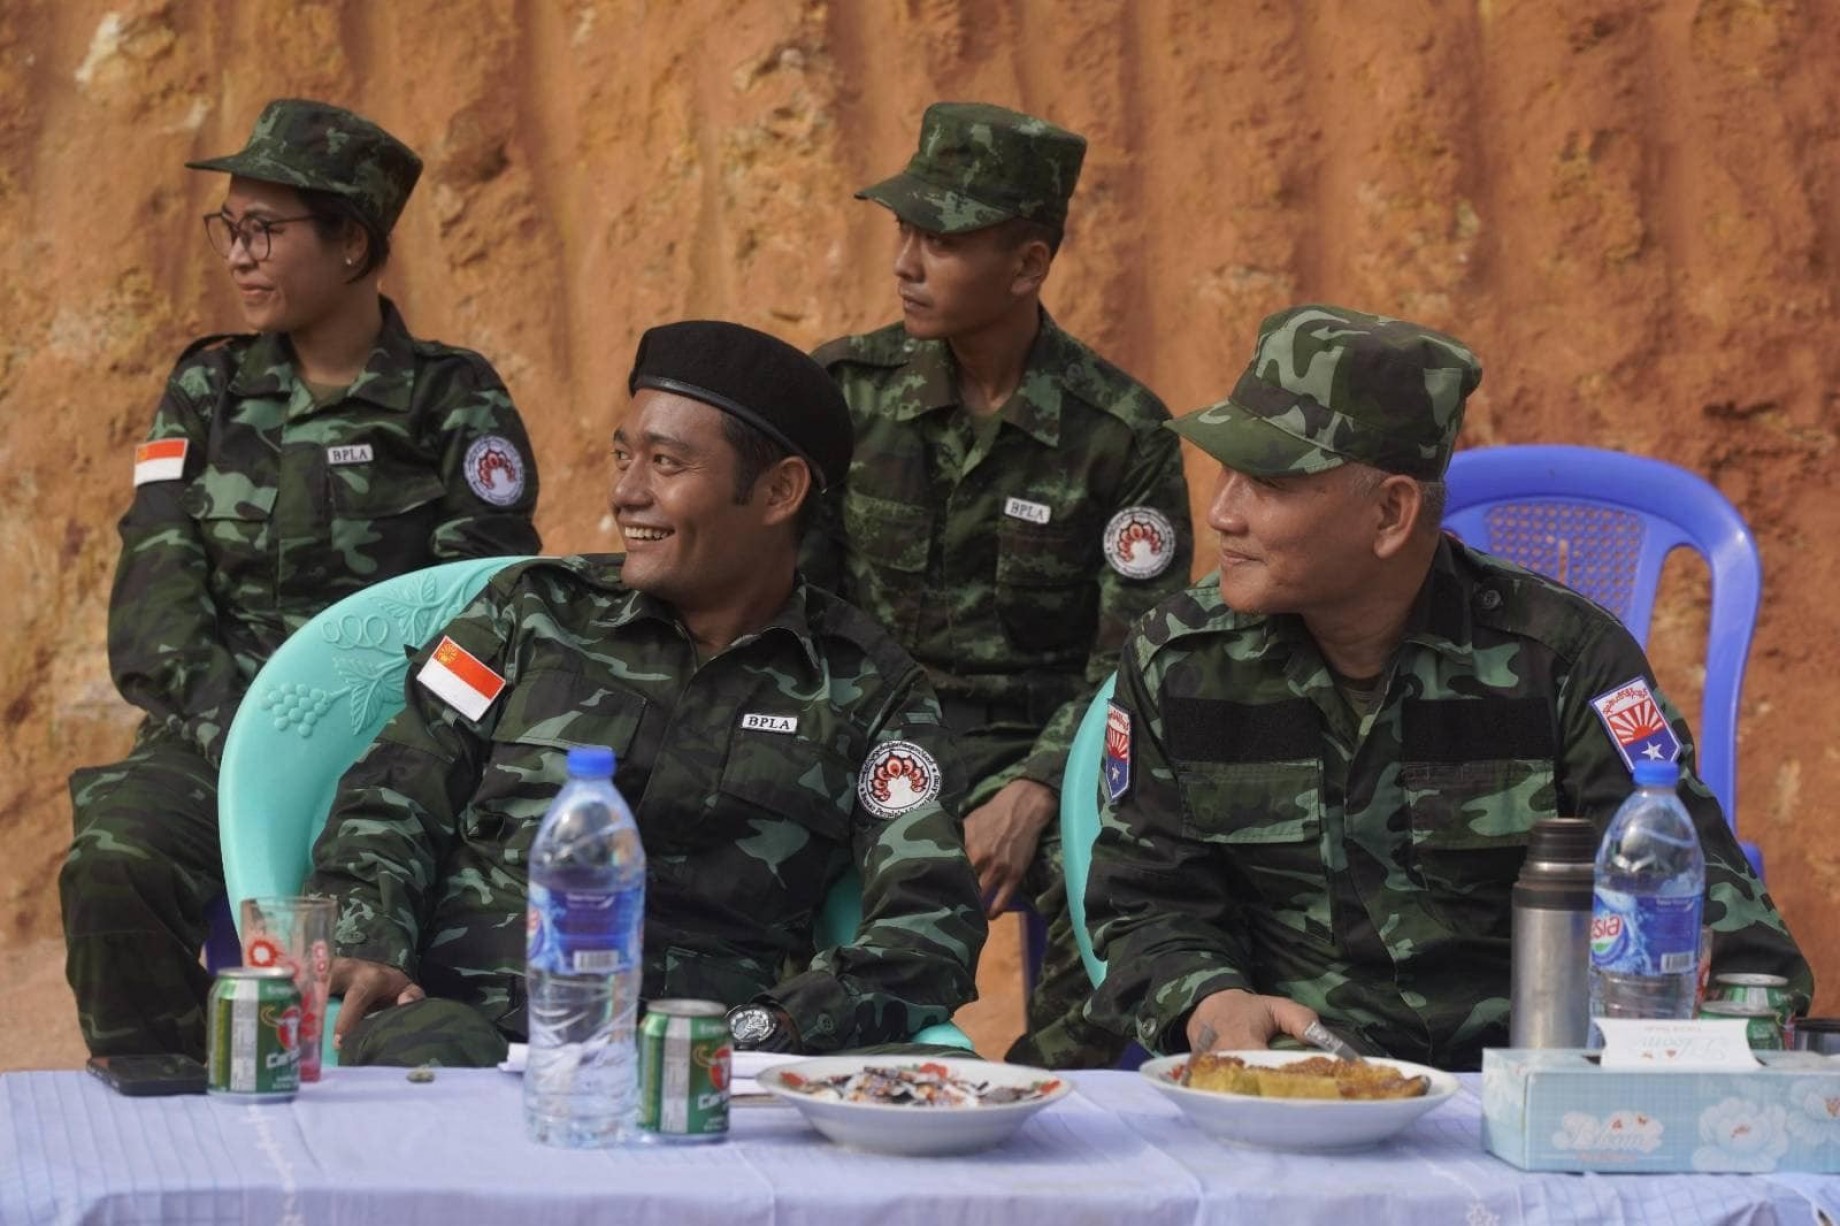 缅族人民解放军在一周年之际获得主要民族武装武装团体的支持